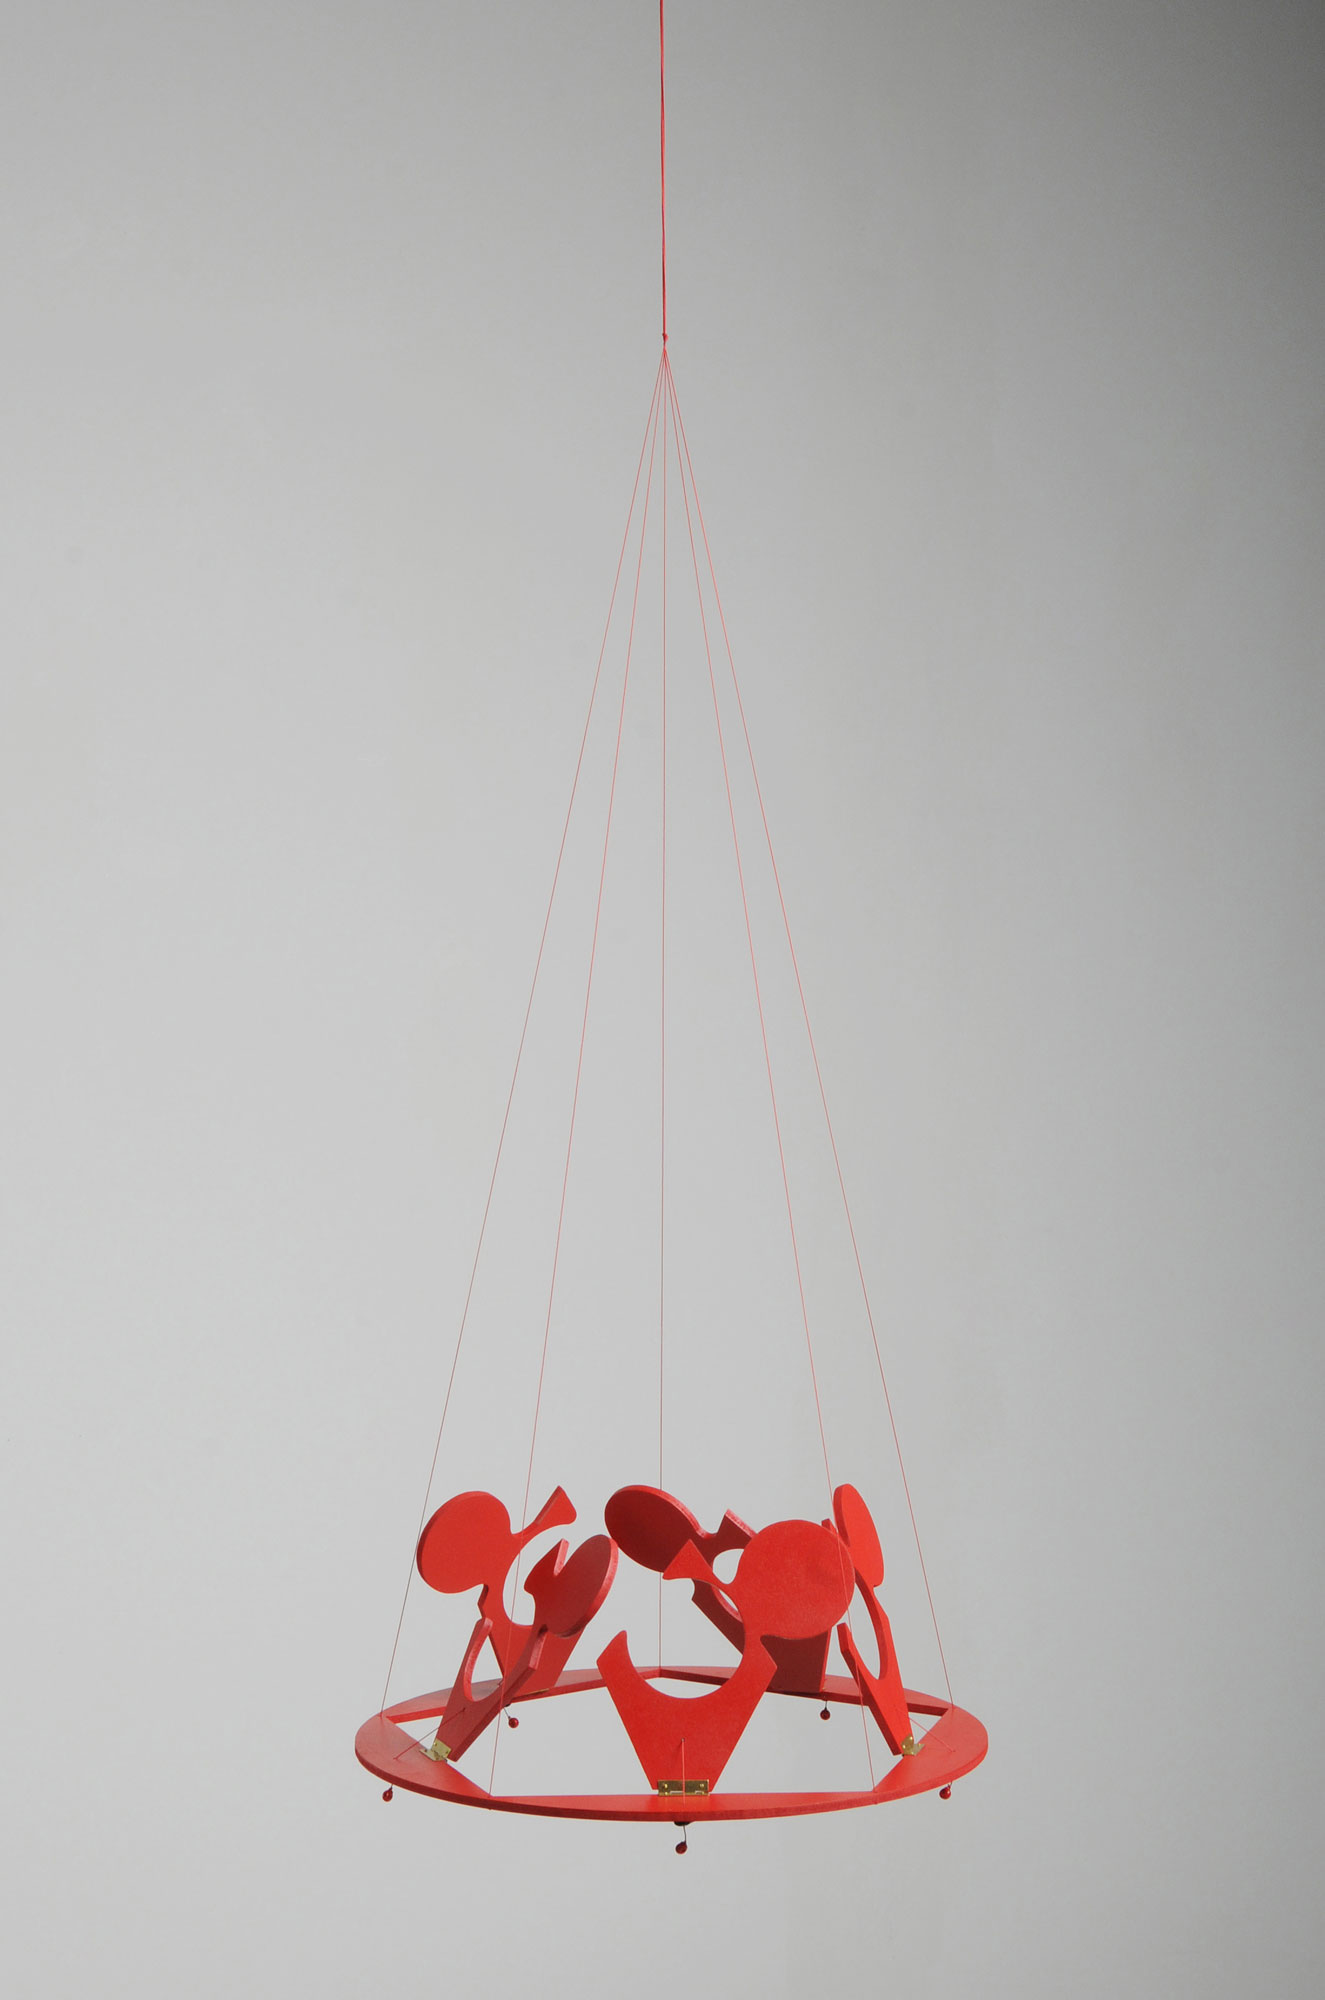 The PACT de la collection OXYTOCIN (RED IS THE COLOR OF LOVE) en collaboration avec Alejandro Ruiz, bracelet pour 5 personnes - bois, peinture, corde synthétique, perles, arrêts de cordons, micro charnières et clous en laiton, découpe sur bois - Ø 40 x h.0,6 cm fermé et Ø 40 x h.16 cm ouvert - 2020 - Photo : F. Kada